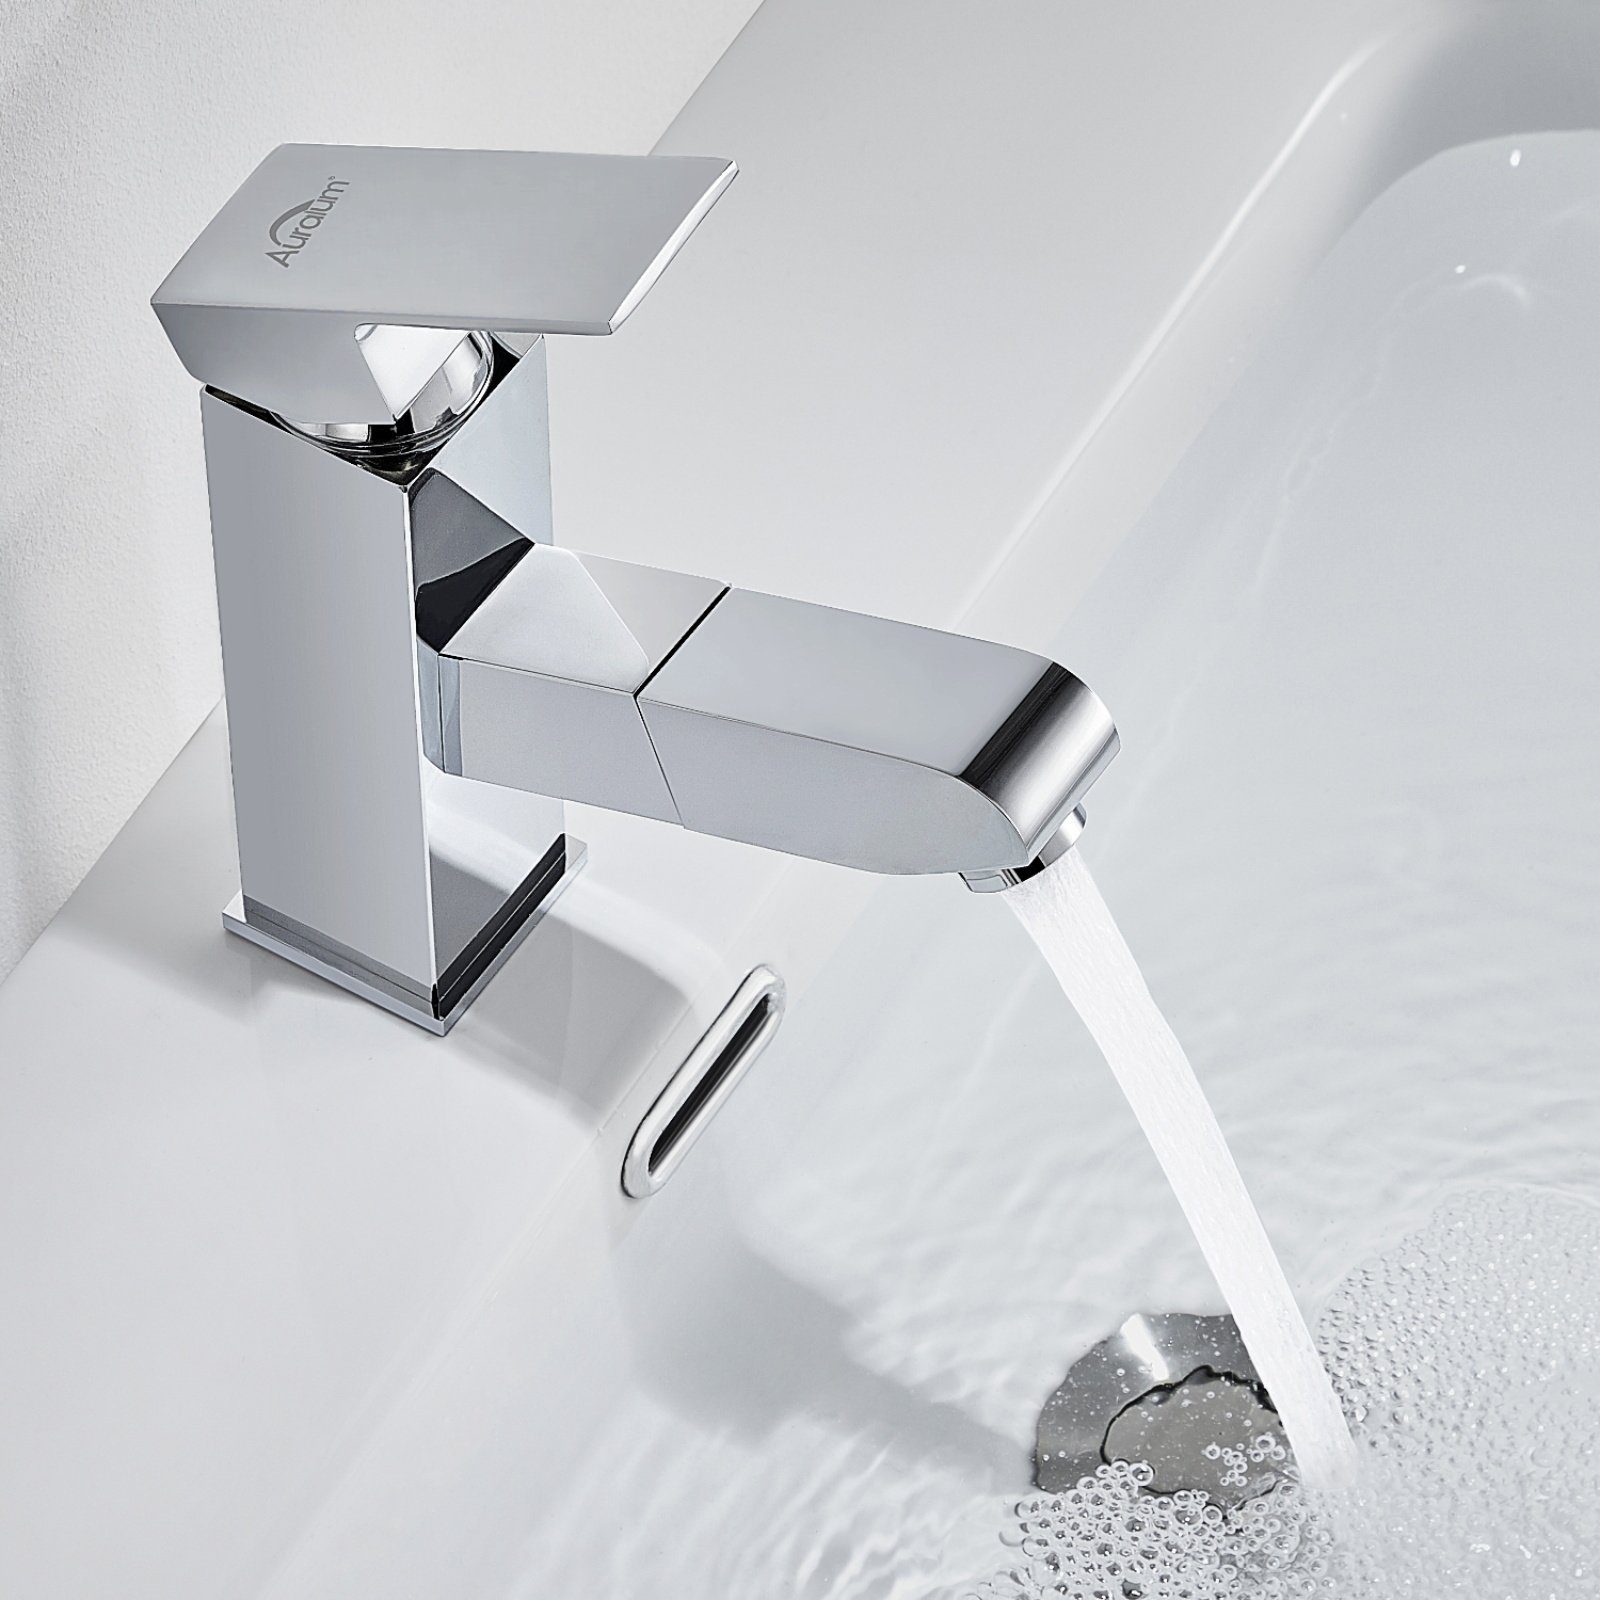 Auralum Waschtischarmatur Waschbecken Badarmatur Brause mit Ausziehbar Mischbatterie Wasserhahn Silber